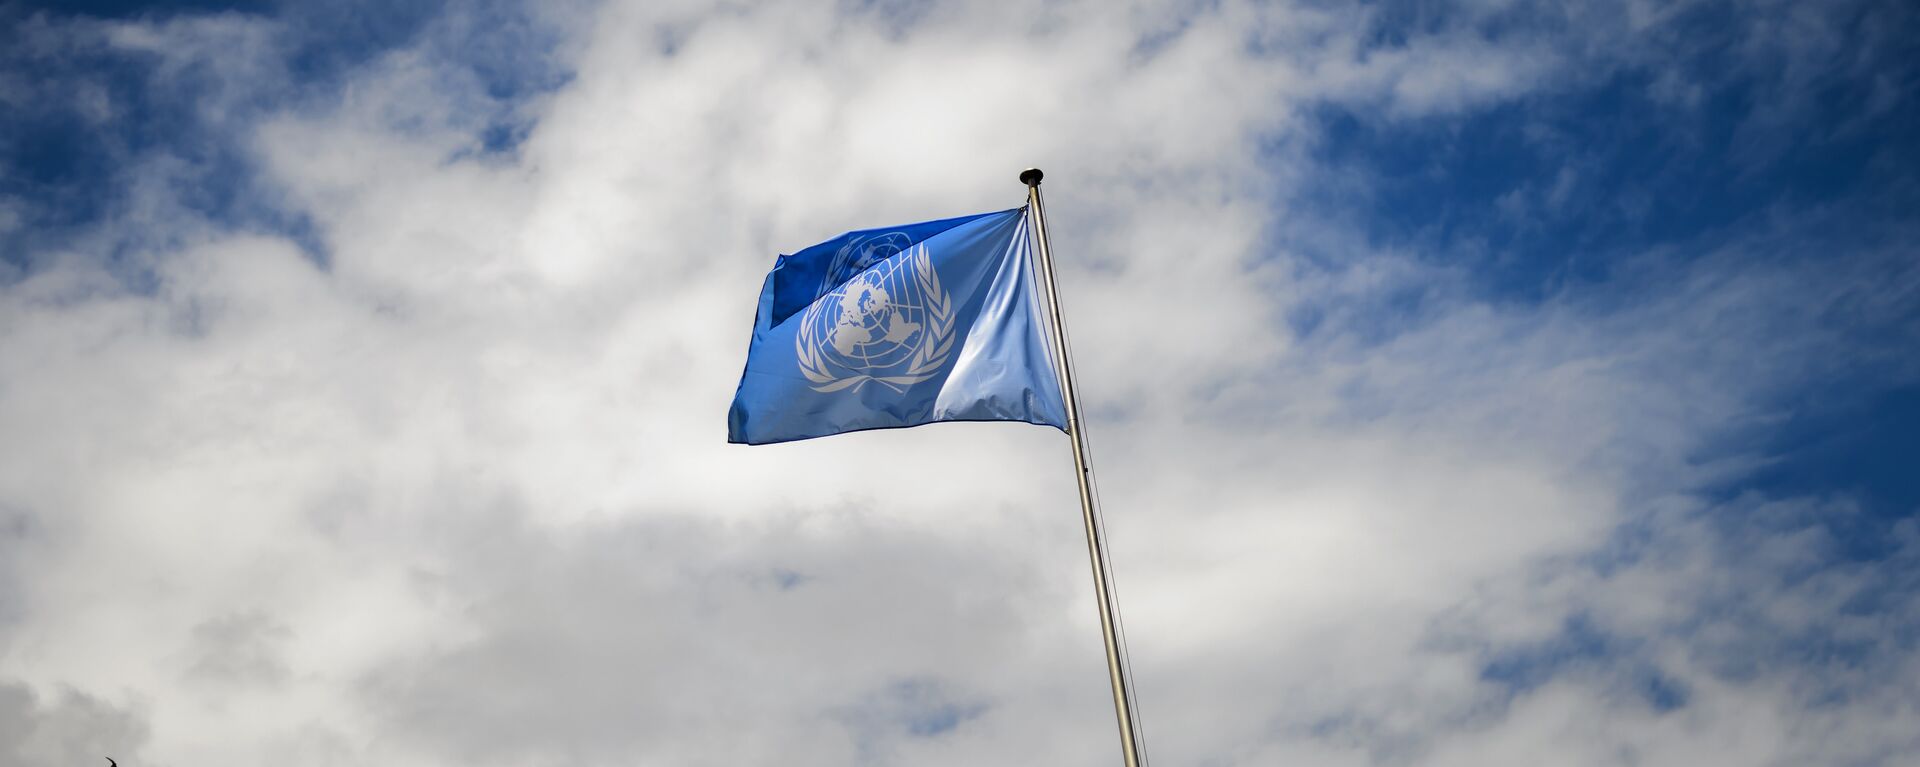 La bandera de la ONU - Sputnik Mundo, 1920, 25.11.2021